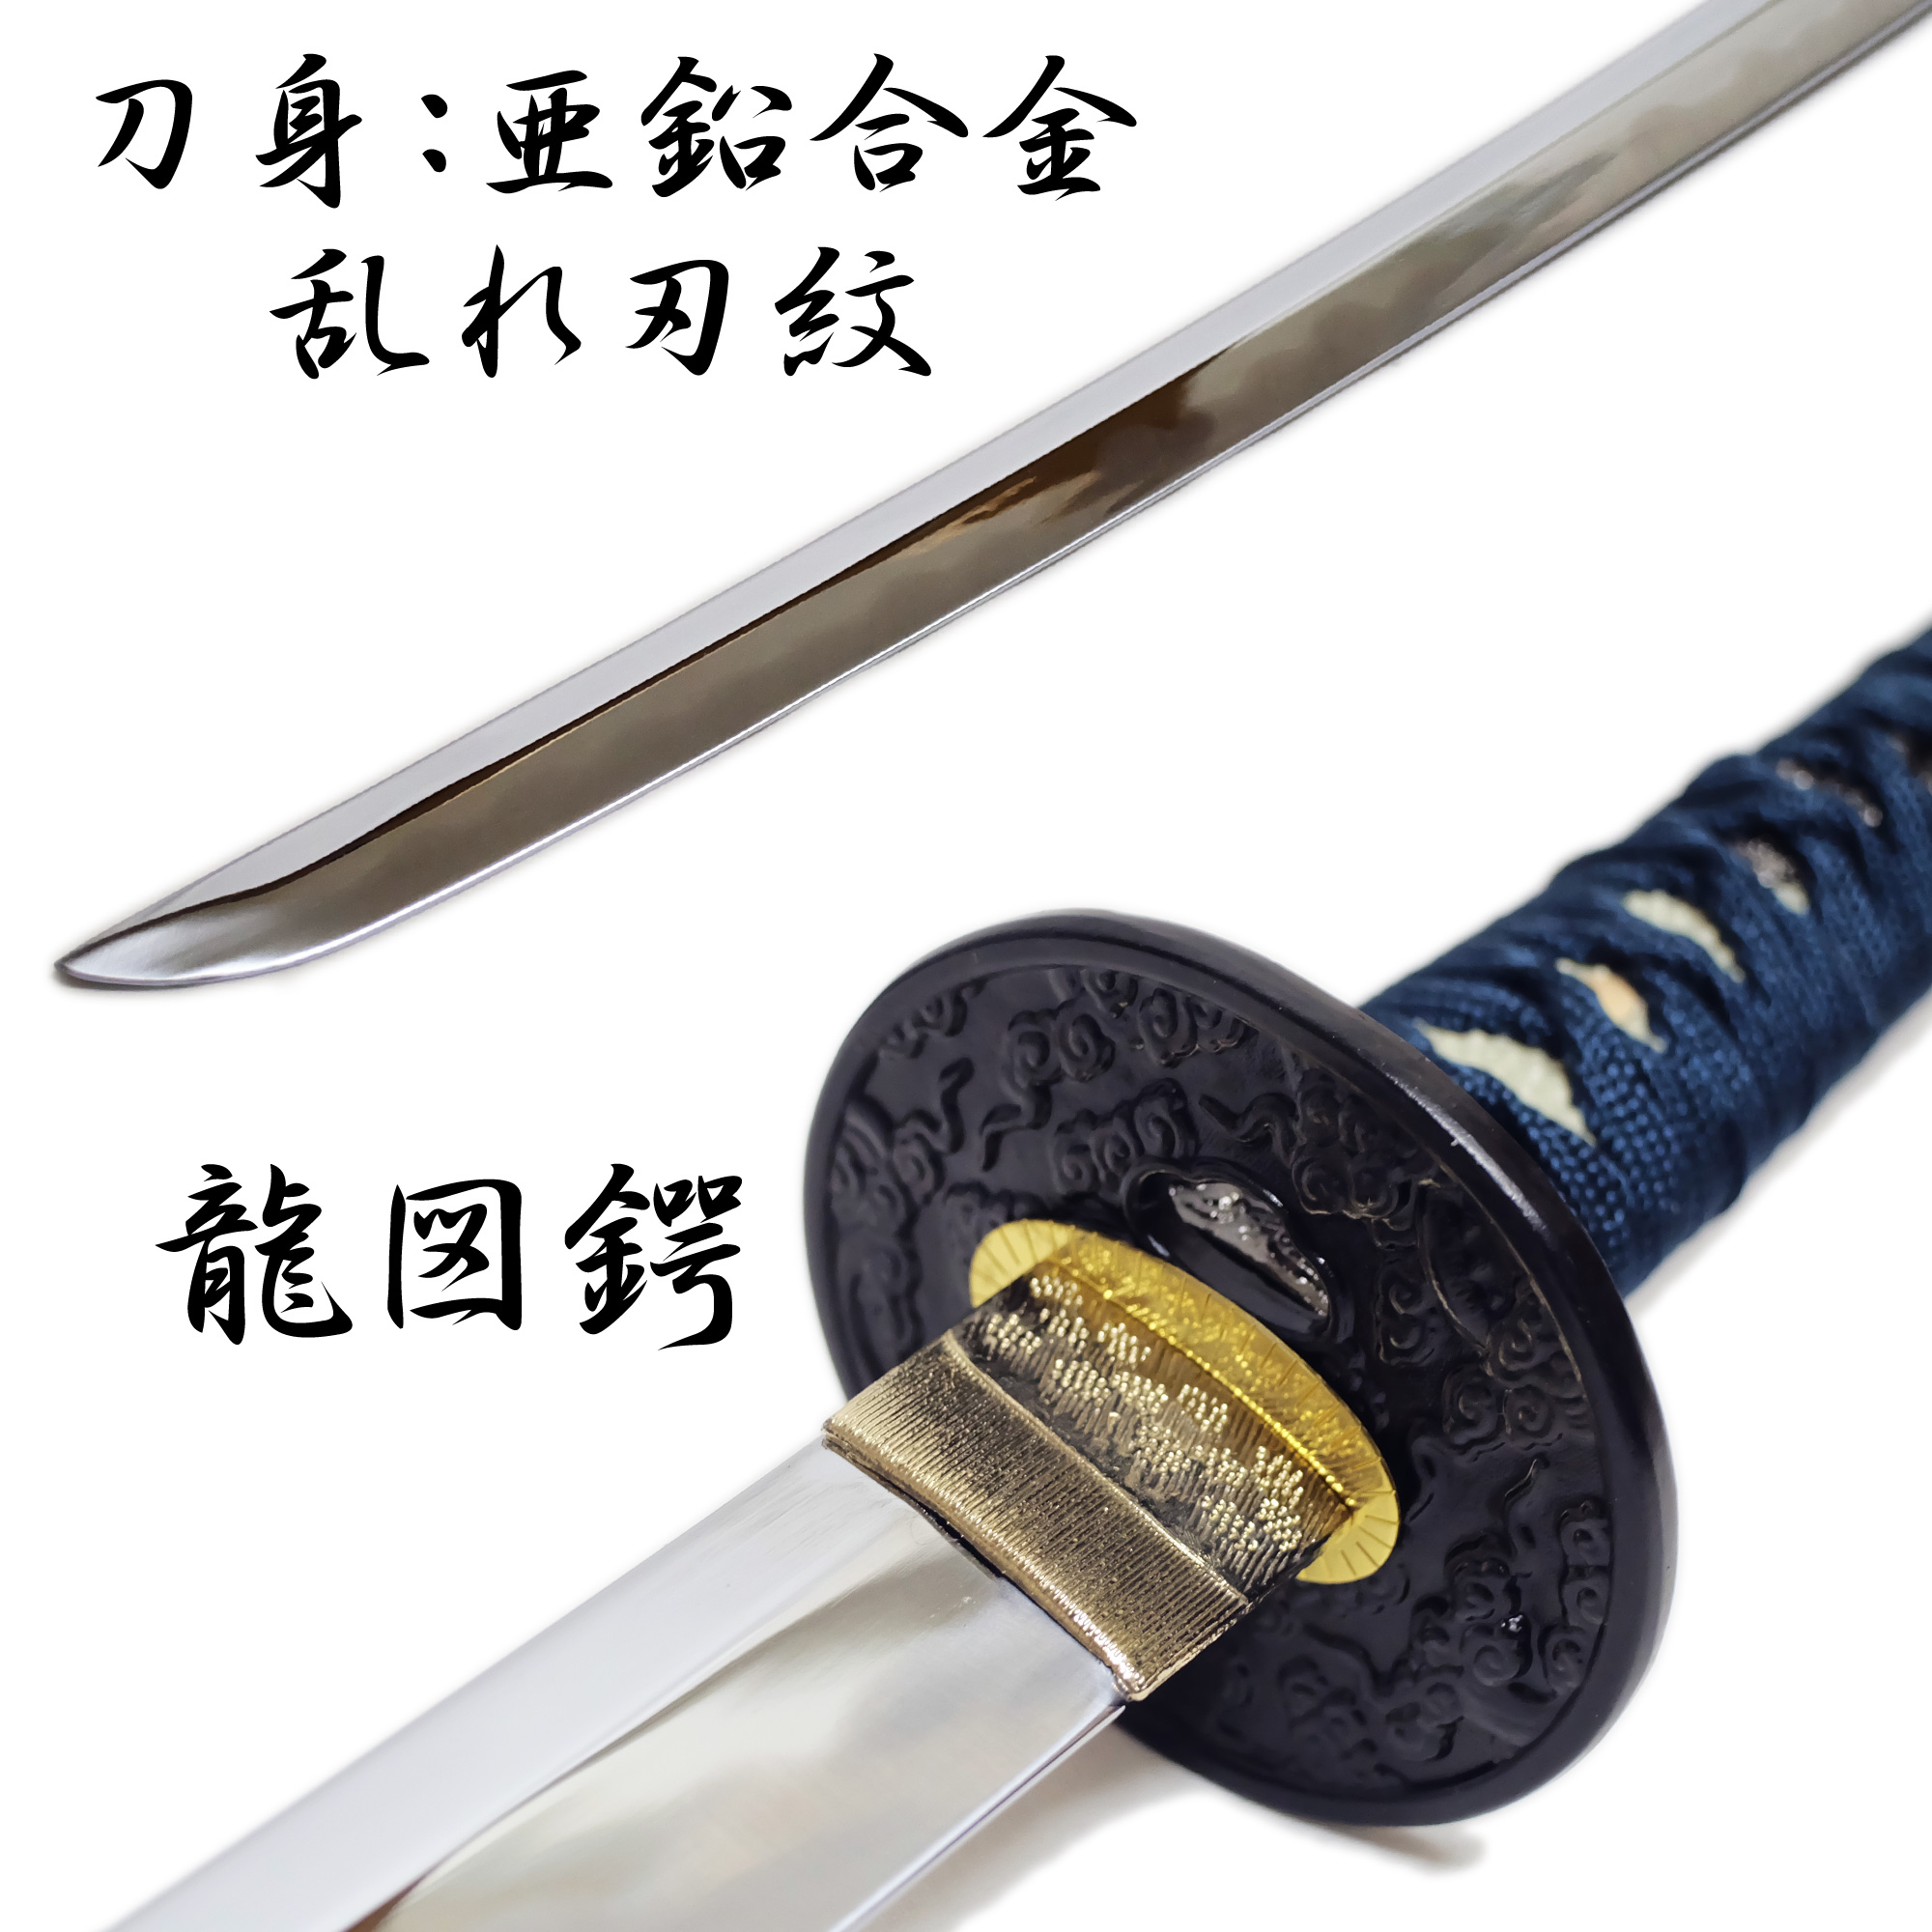 日本製 模造刀剣 匠刀房 青雲 小刀 NEU-045S - コスプレ 観賞用 インテリア